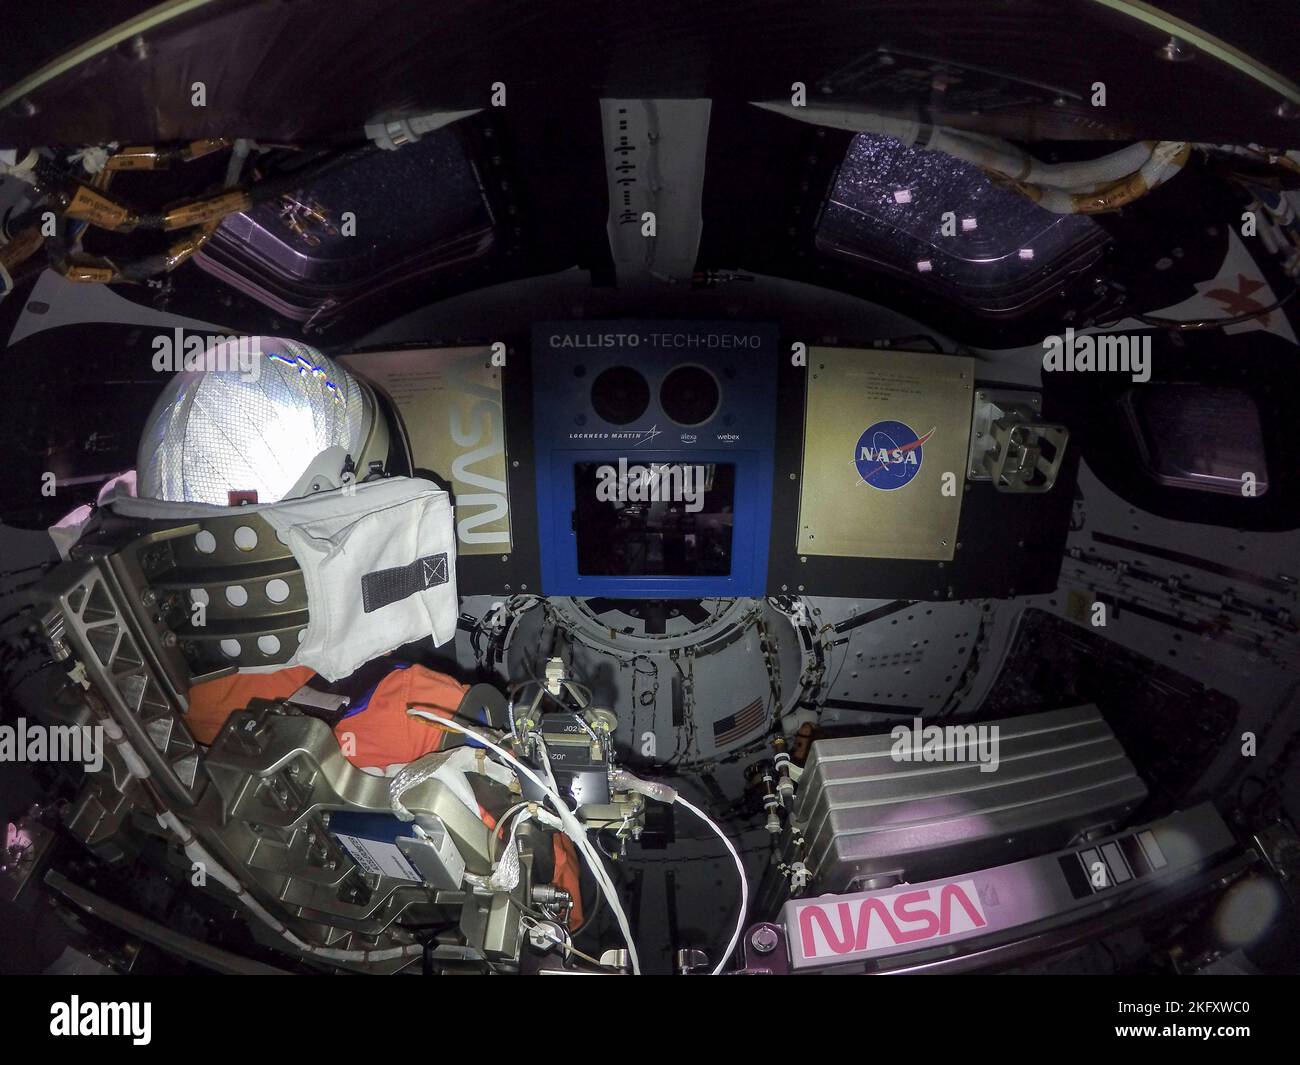 Órbita de la Tierra, órbita de la Tierra. 16 de noviembre de 2022. Vista interior de la cápsula de la tripulación de Orión con el maniquí de prueba conocido como Comandante Moonikin Campos, en el primer día de vuelo de la misión Artemis I de la NASA, el 16 de noviembre de 2022, en órbita terrestre. El maniquí está equipado con sensores para recoger datos durante el vuelo de prueba no tripulado. Crédito: NASA/NASA/Alamy Live News Foto de stock